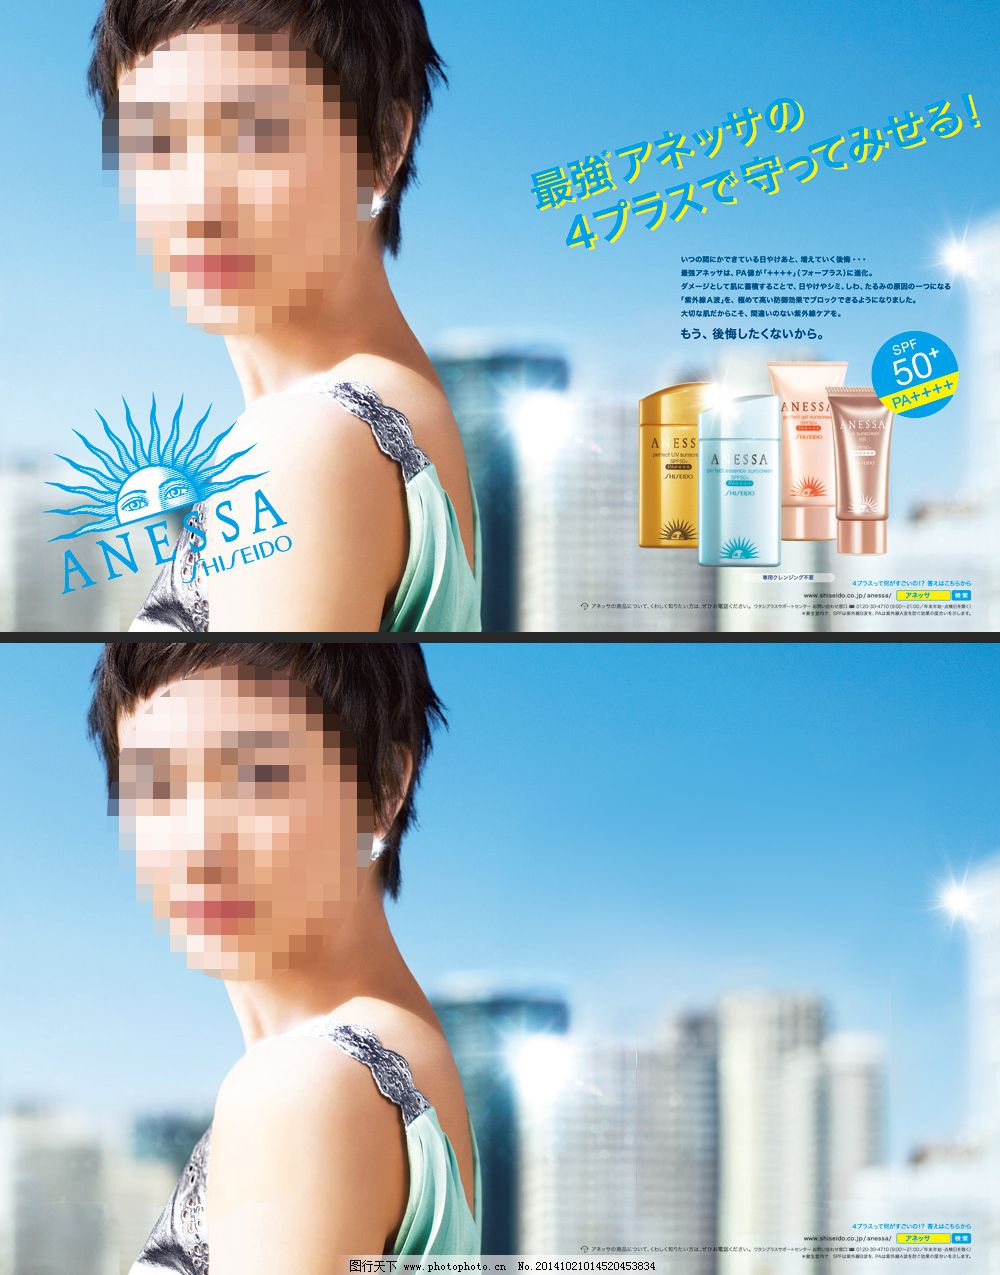 ‘~淘宝日本化妆品海报素材下载图片_美妆洗护_电商图片-  ~’ 的图片